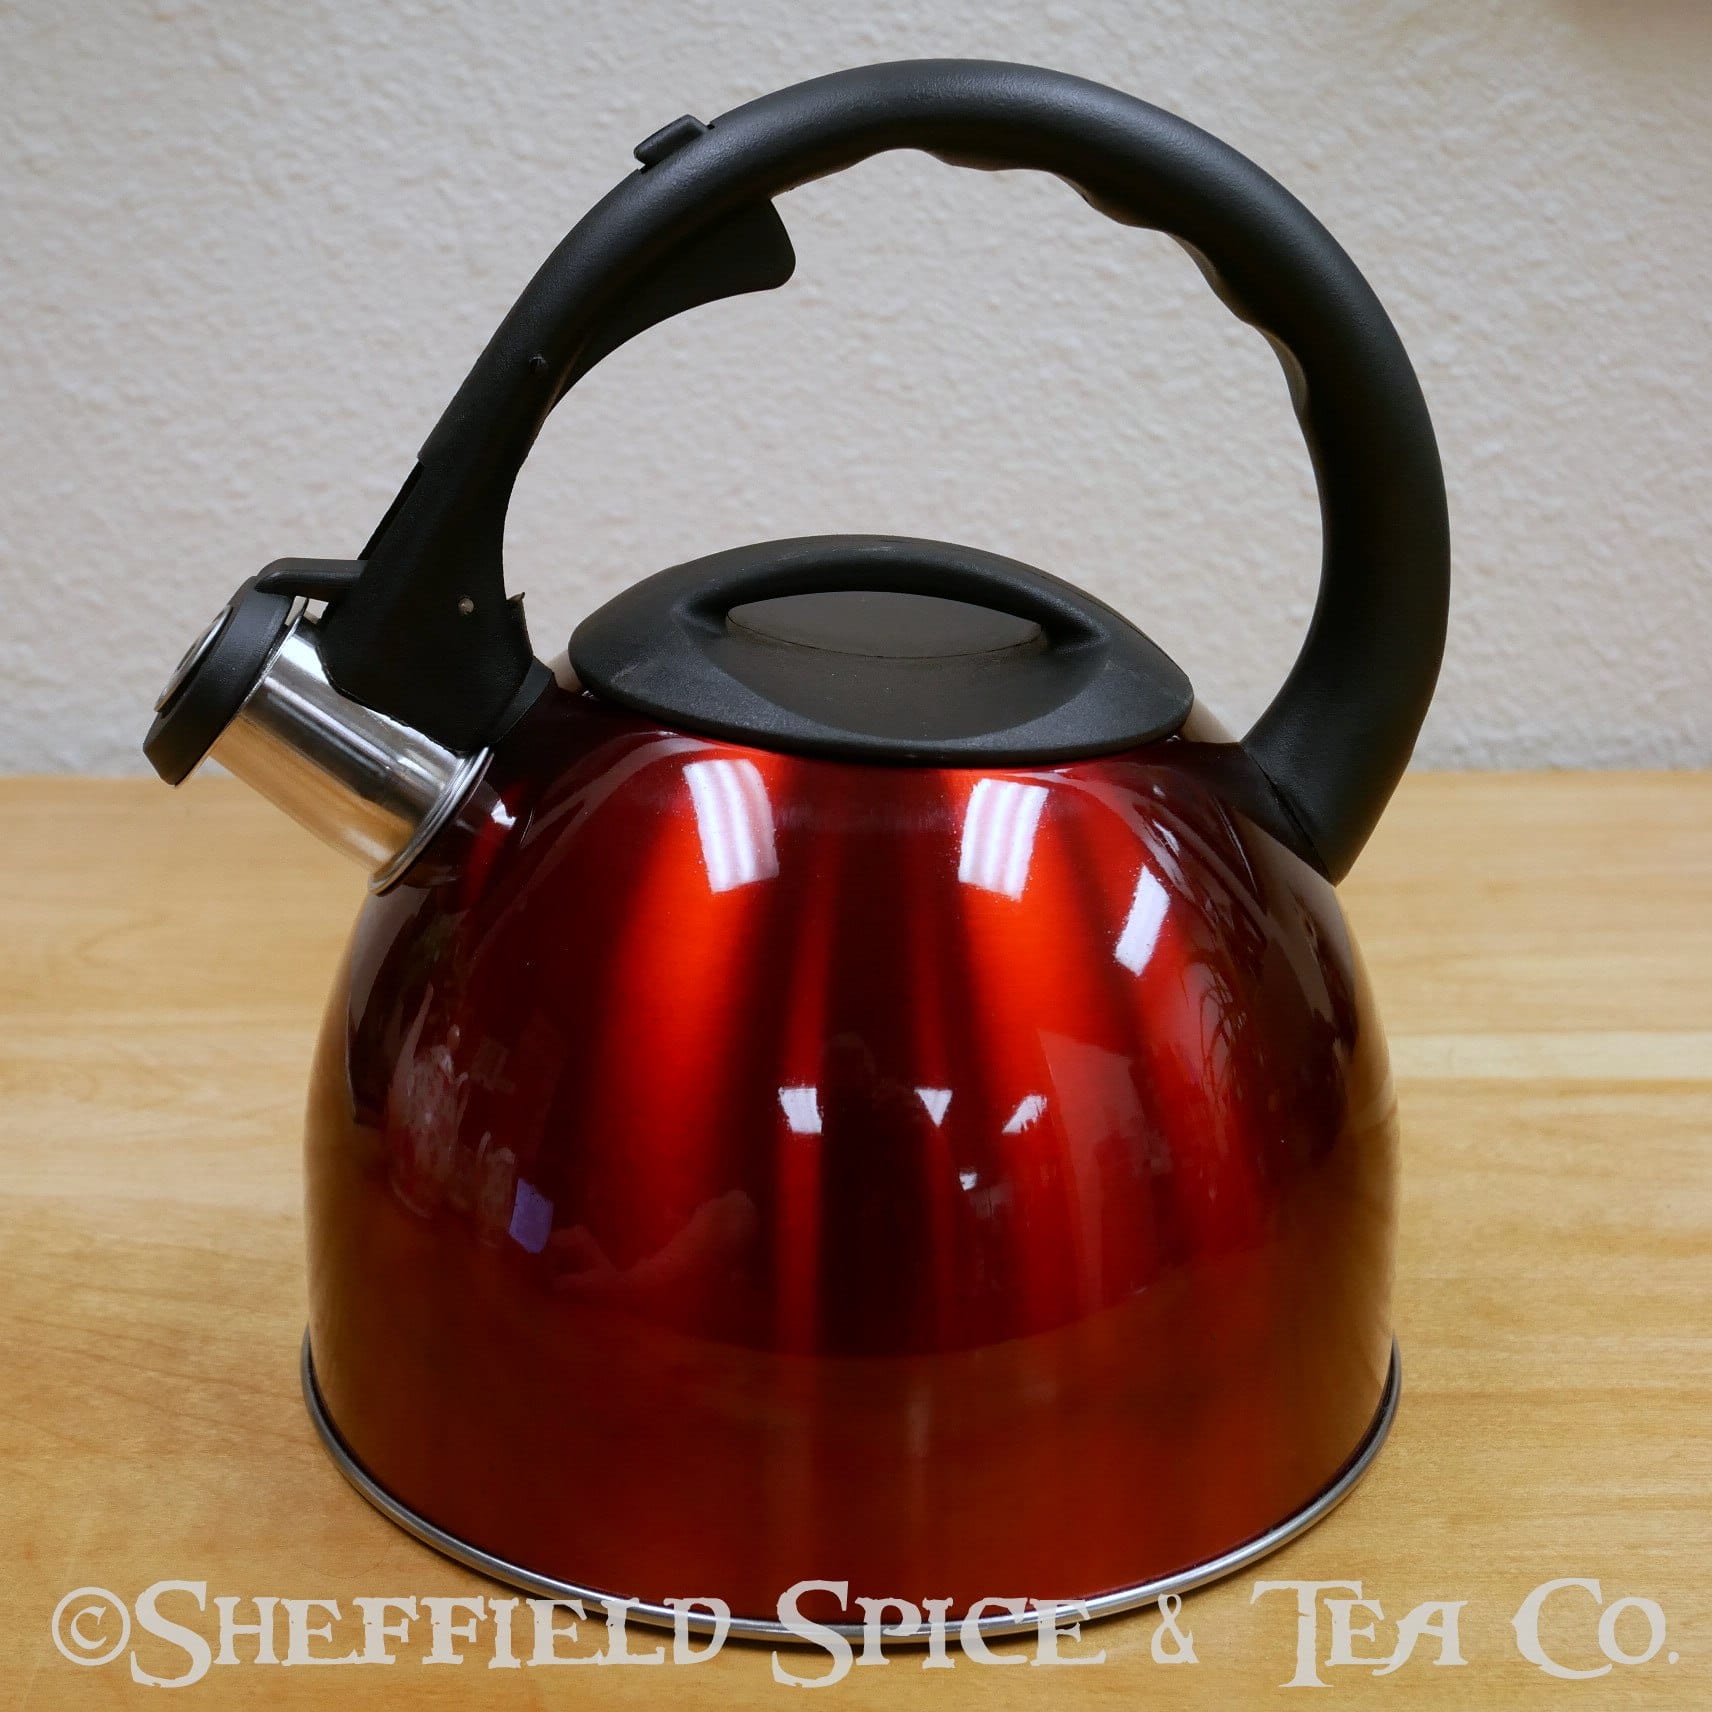 Stainless Steel Red Whistling Tea Kettle 2.75 Quart